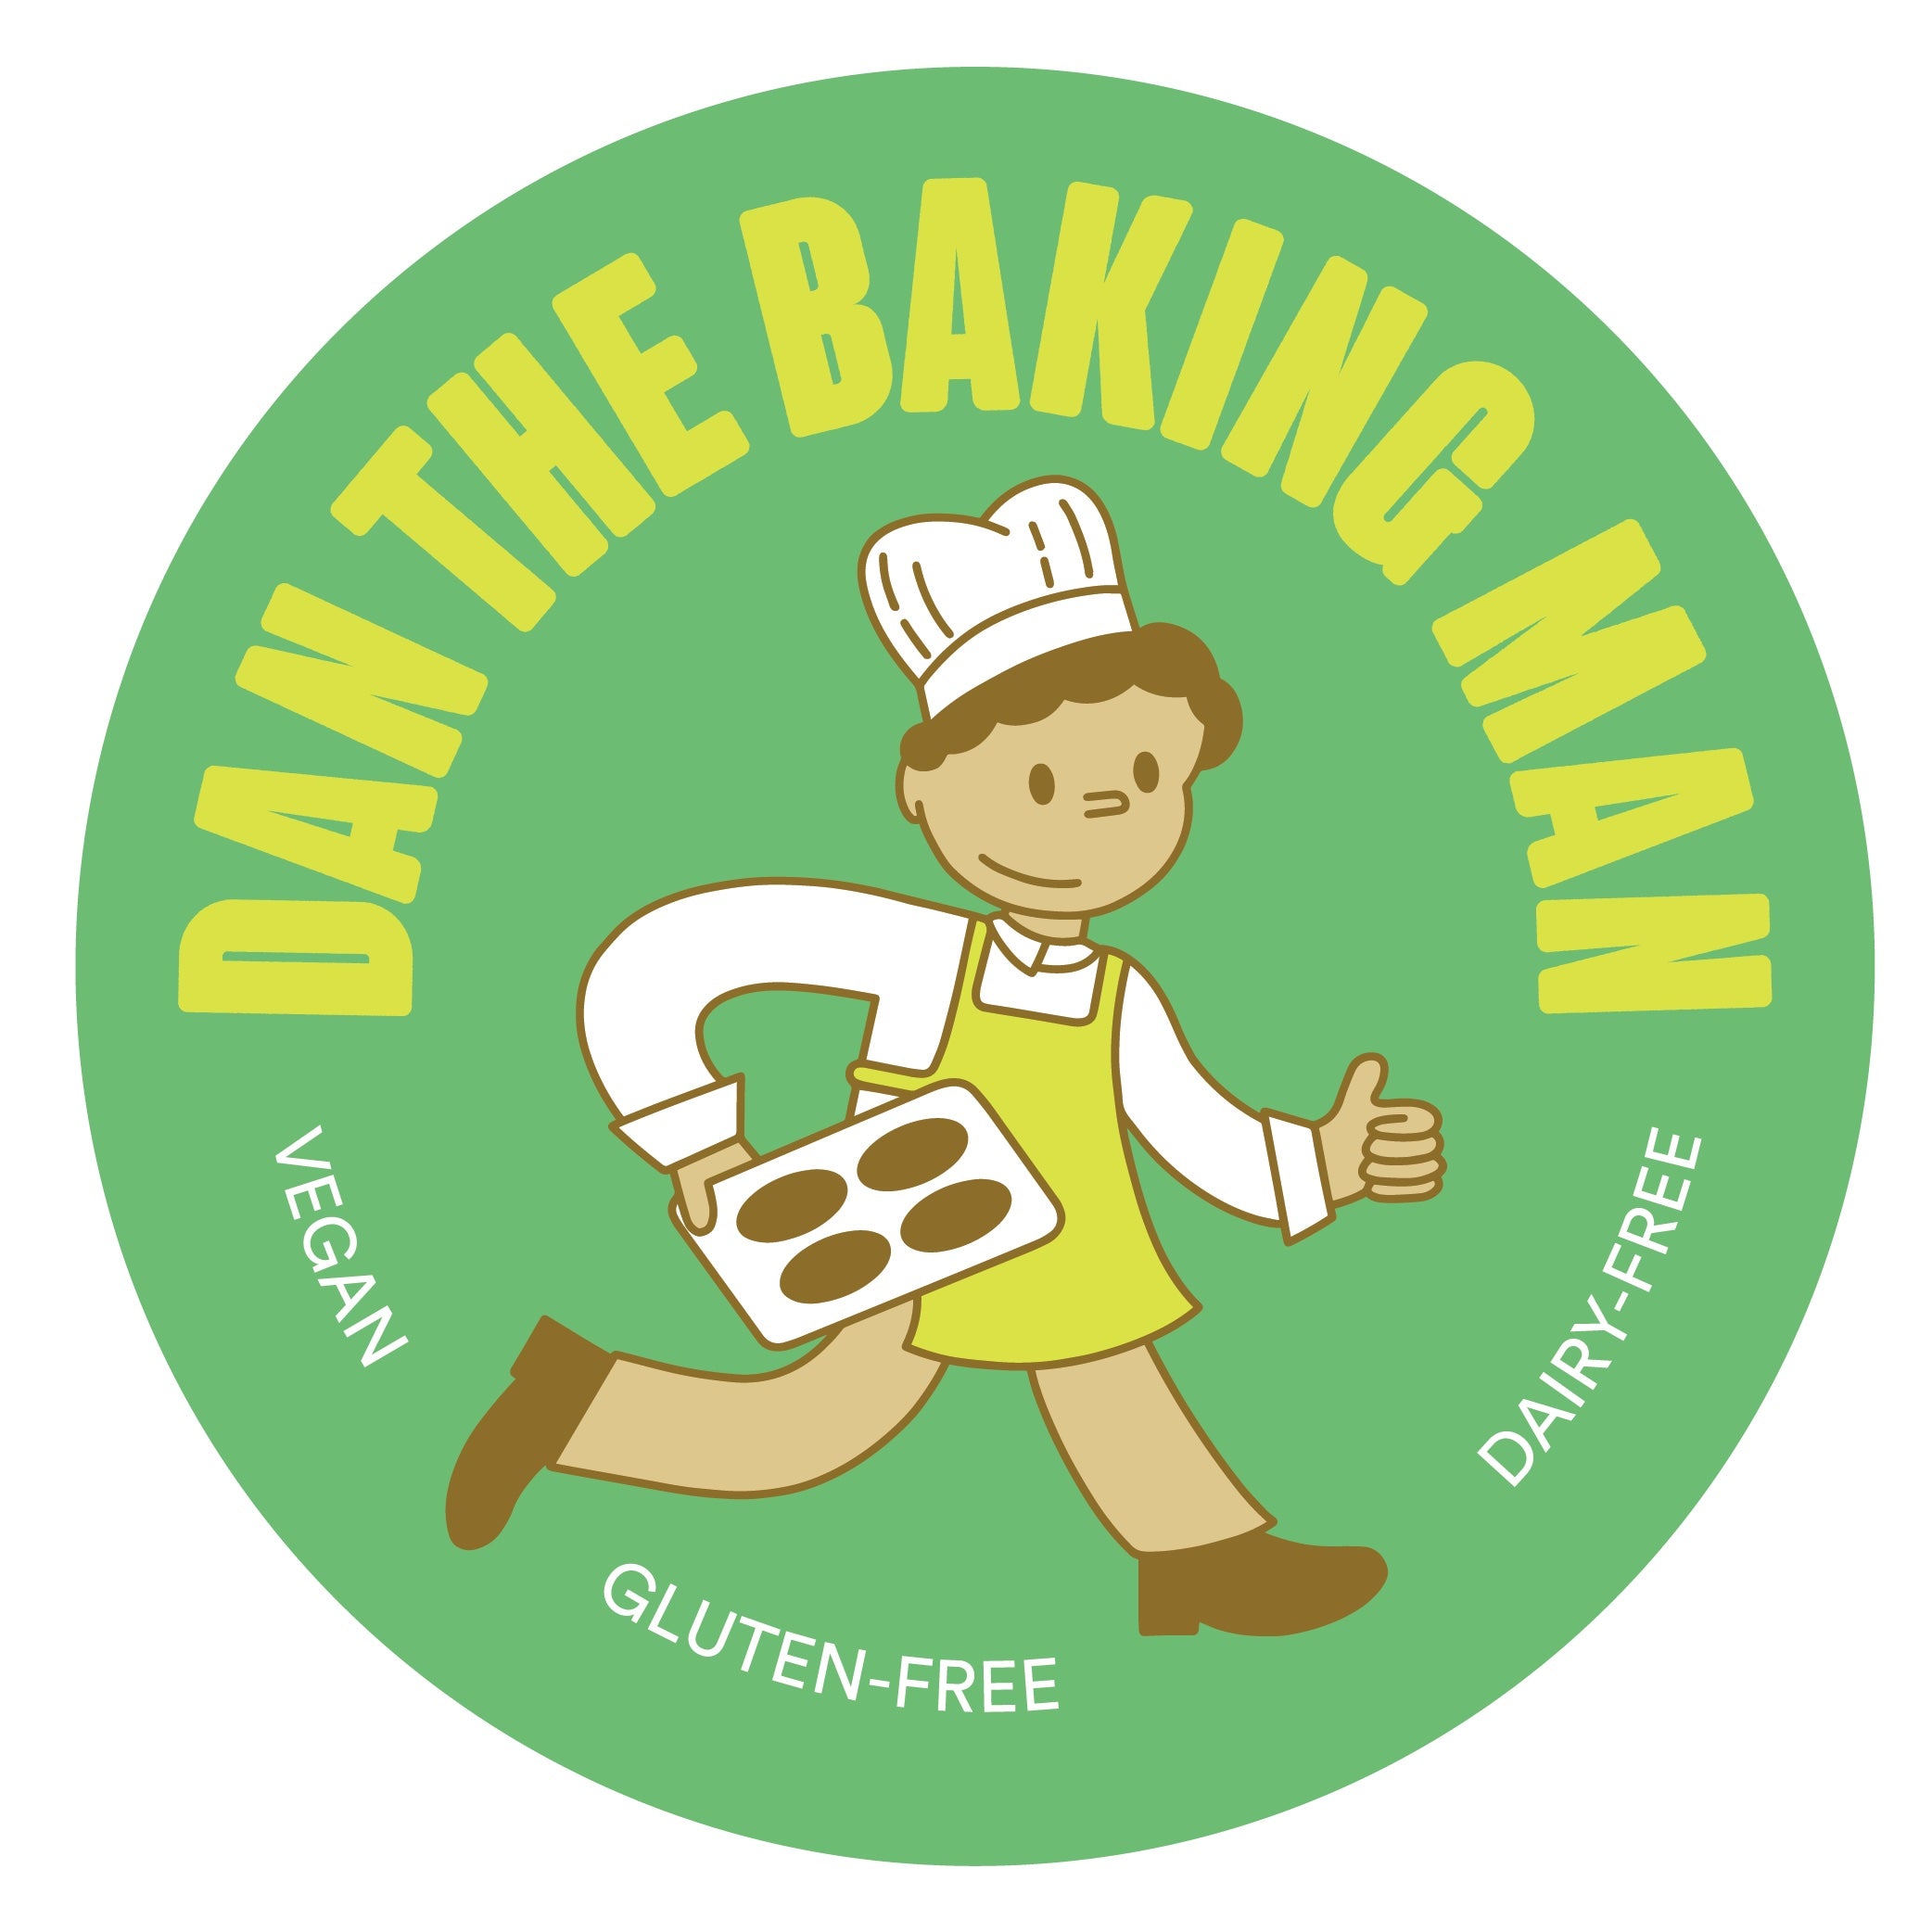 Daniel and Robert Csete, Dan The Baking Man Inc